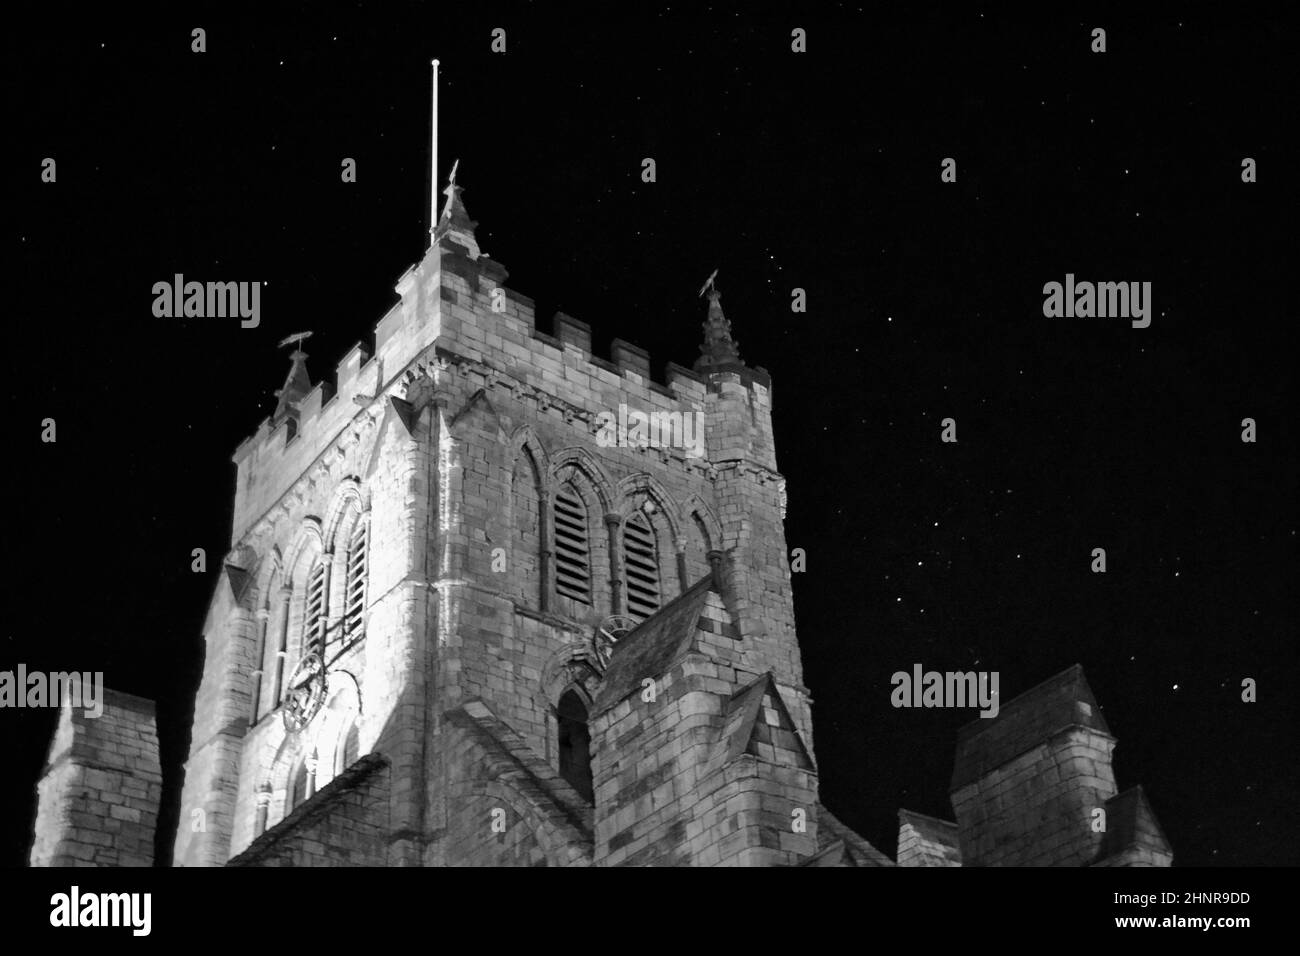 Immagine in bianco e nero della chiesa di St Hilda, Hartlepool, Regno Unito, con uno splendido cielo notturno. Le stelle brillano, compresa la costellazione di Orione. Foto Stock